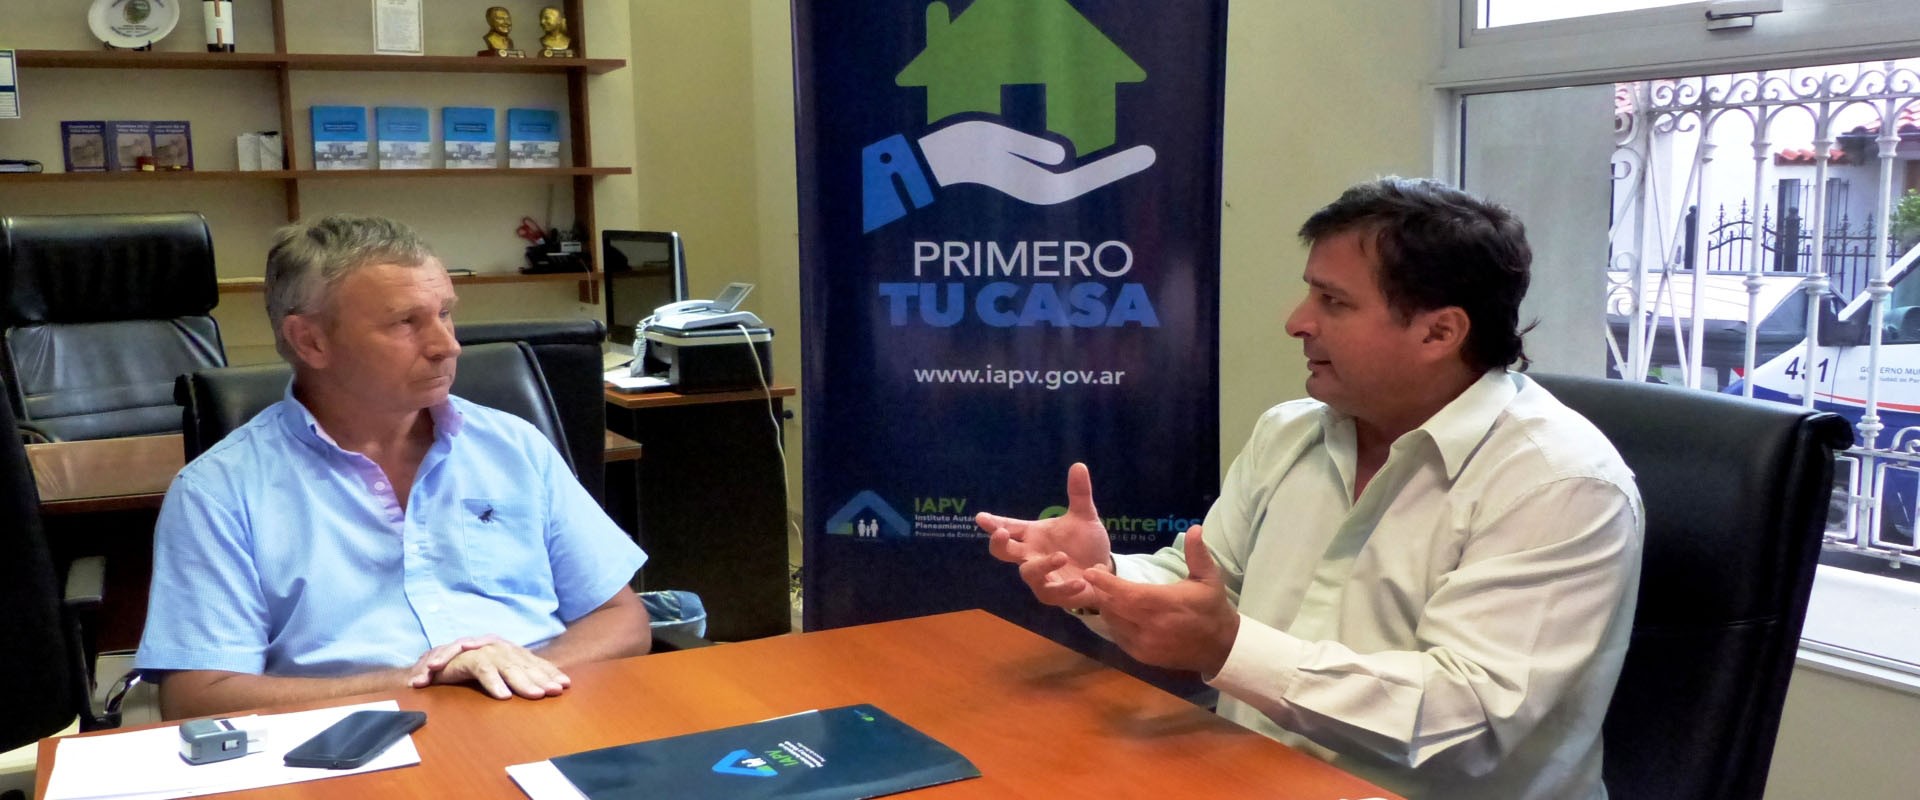 Con fondos provinciales se ejecutarán viviendas en Valle María